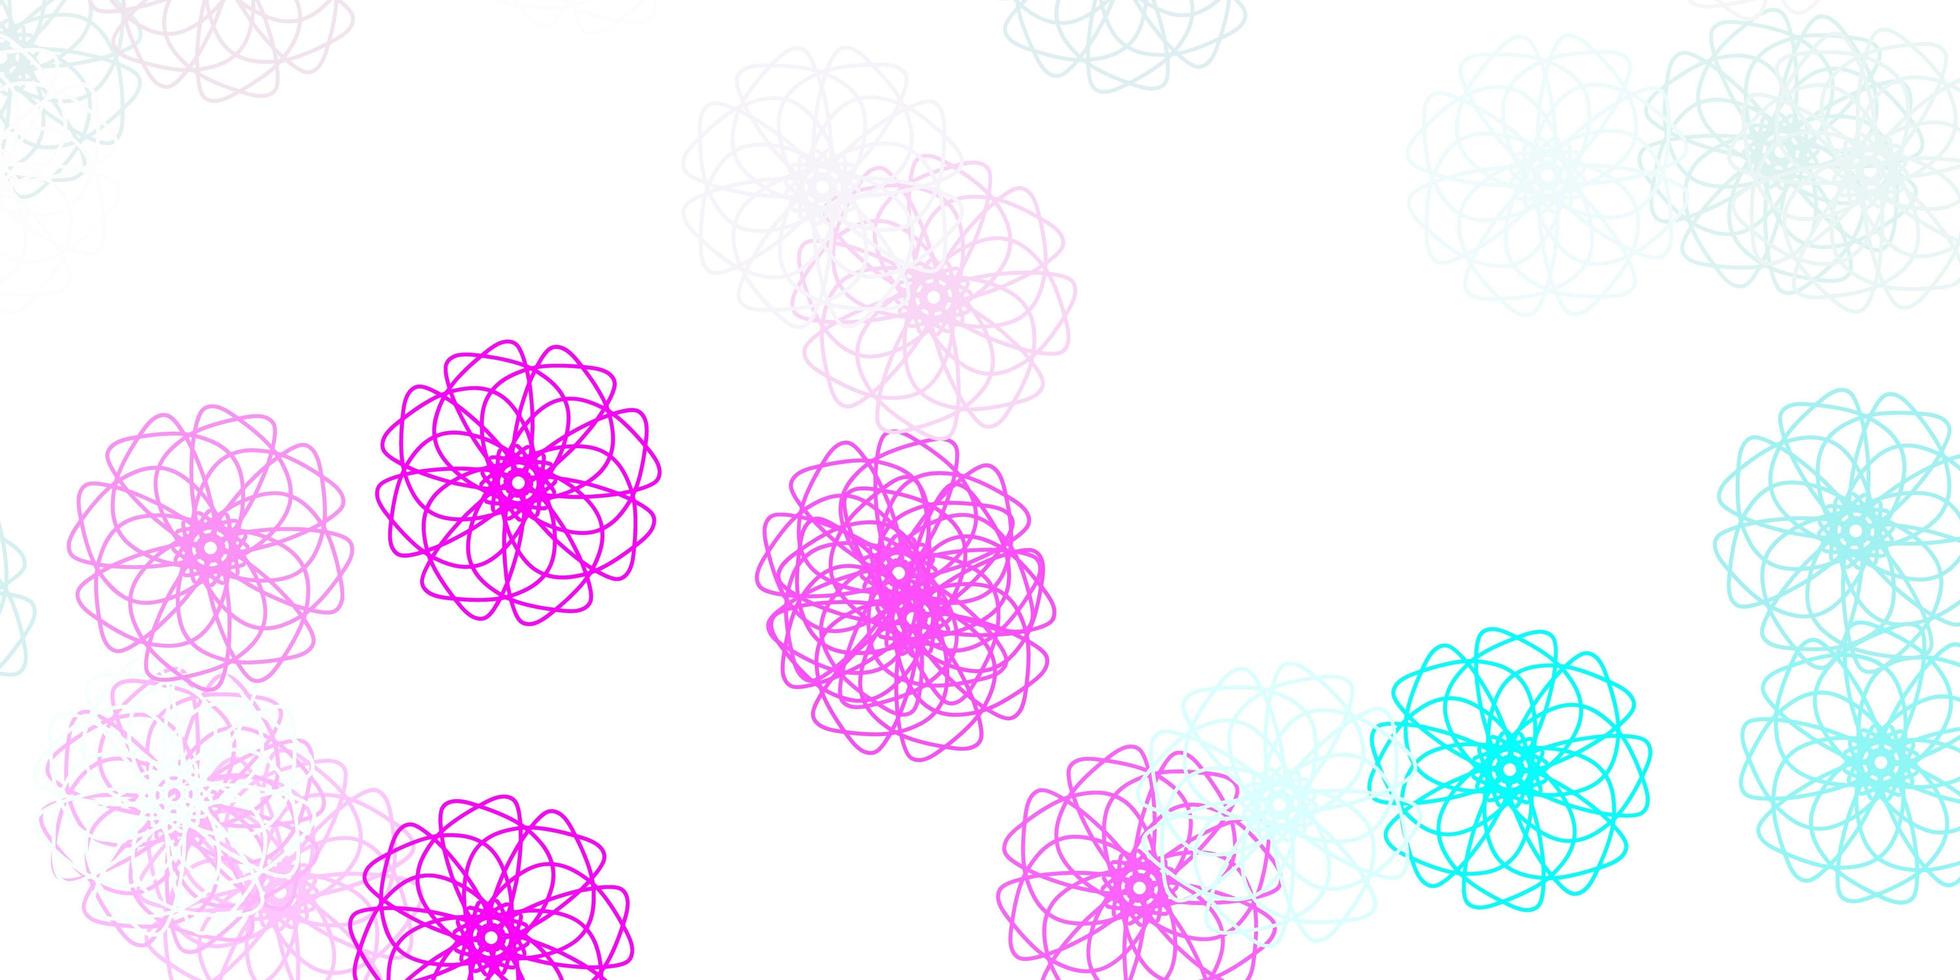 motif de doodle vecteur rose clair, bleu avec des fleurs.